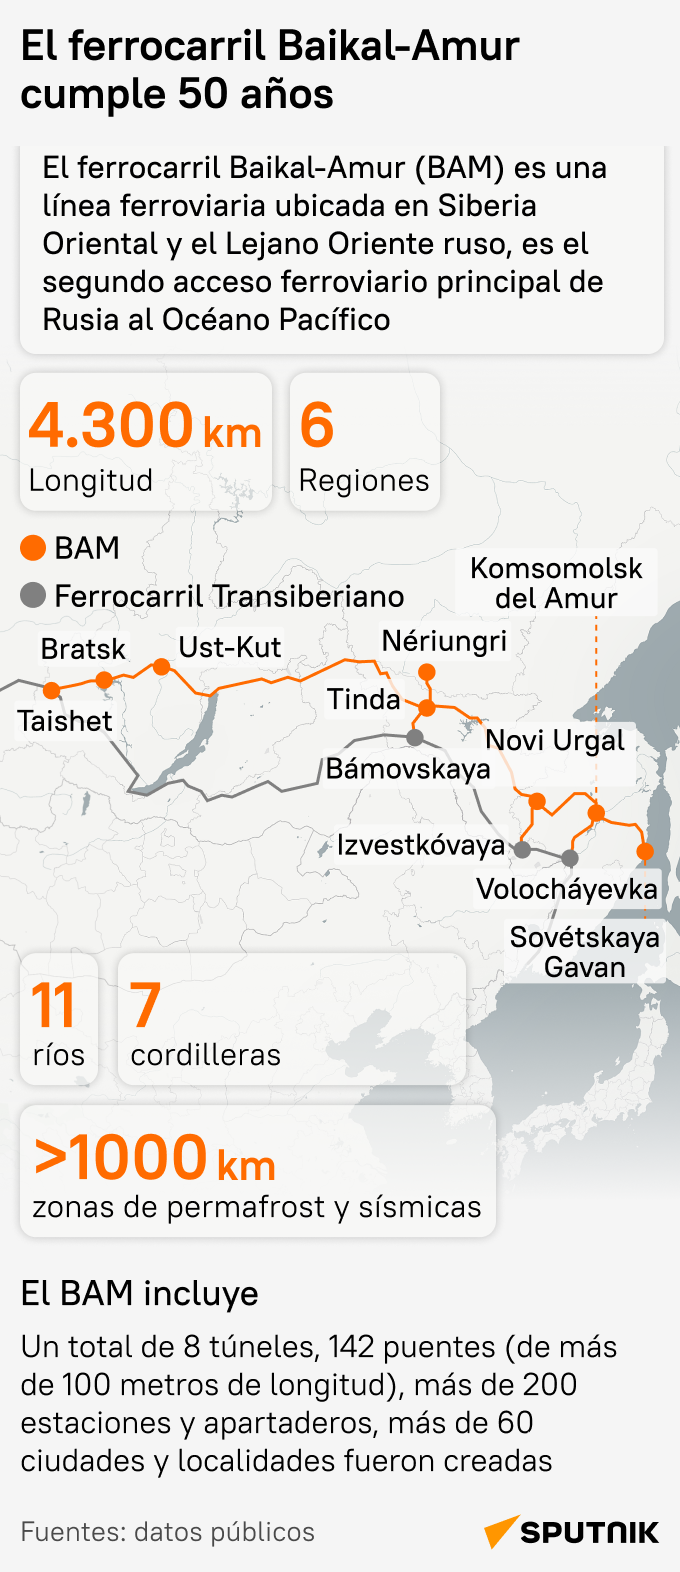 El ferrocarril Baikal-Amur cumple 50 años - Sputnik Mundo